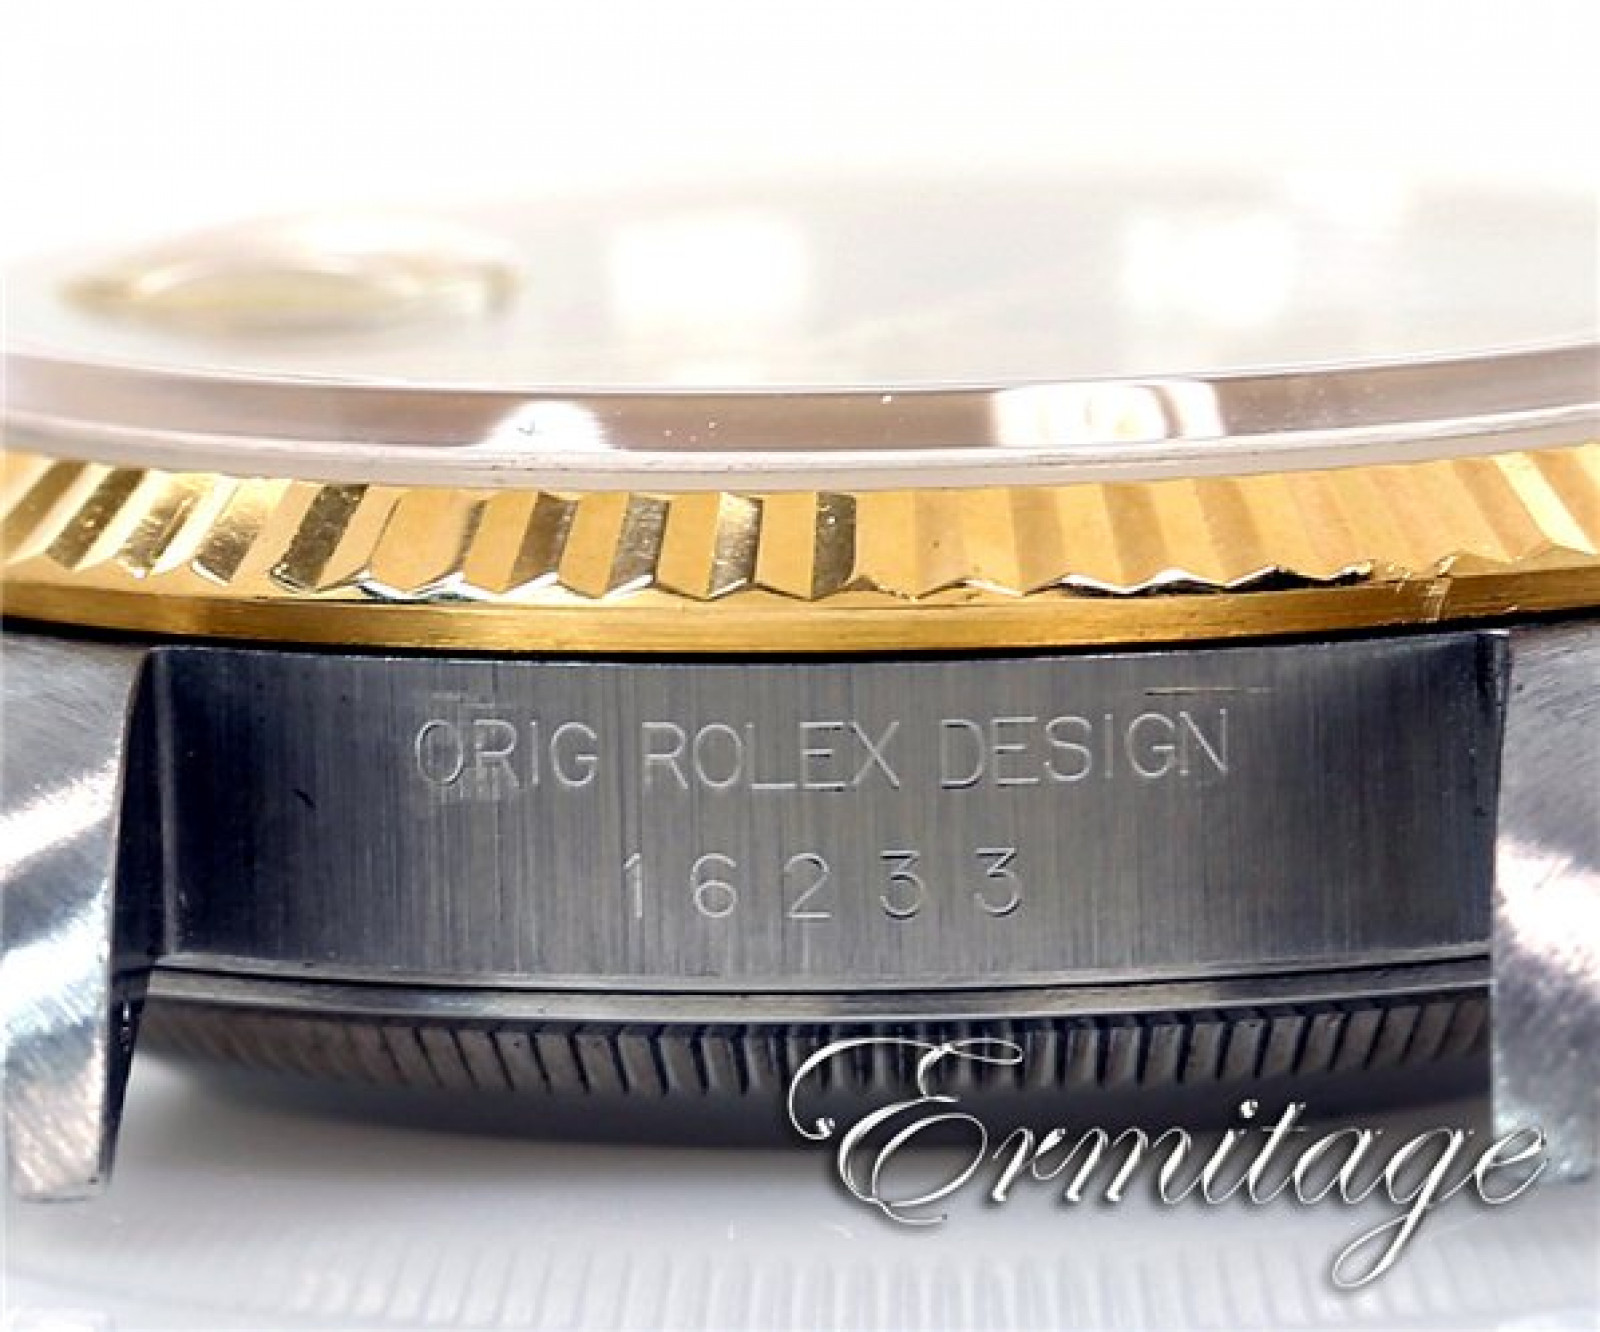 Rolex Datejust 16233 Gold & Steel 1993